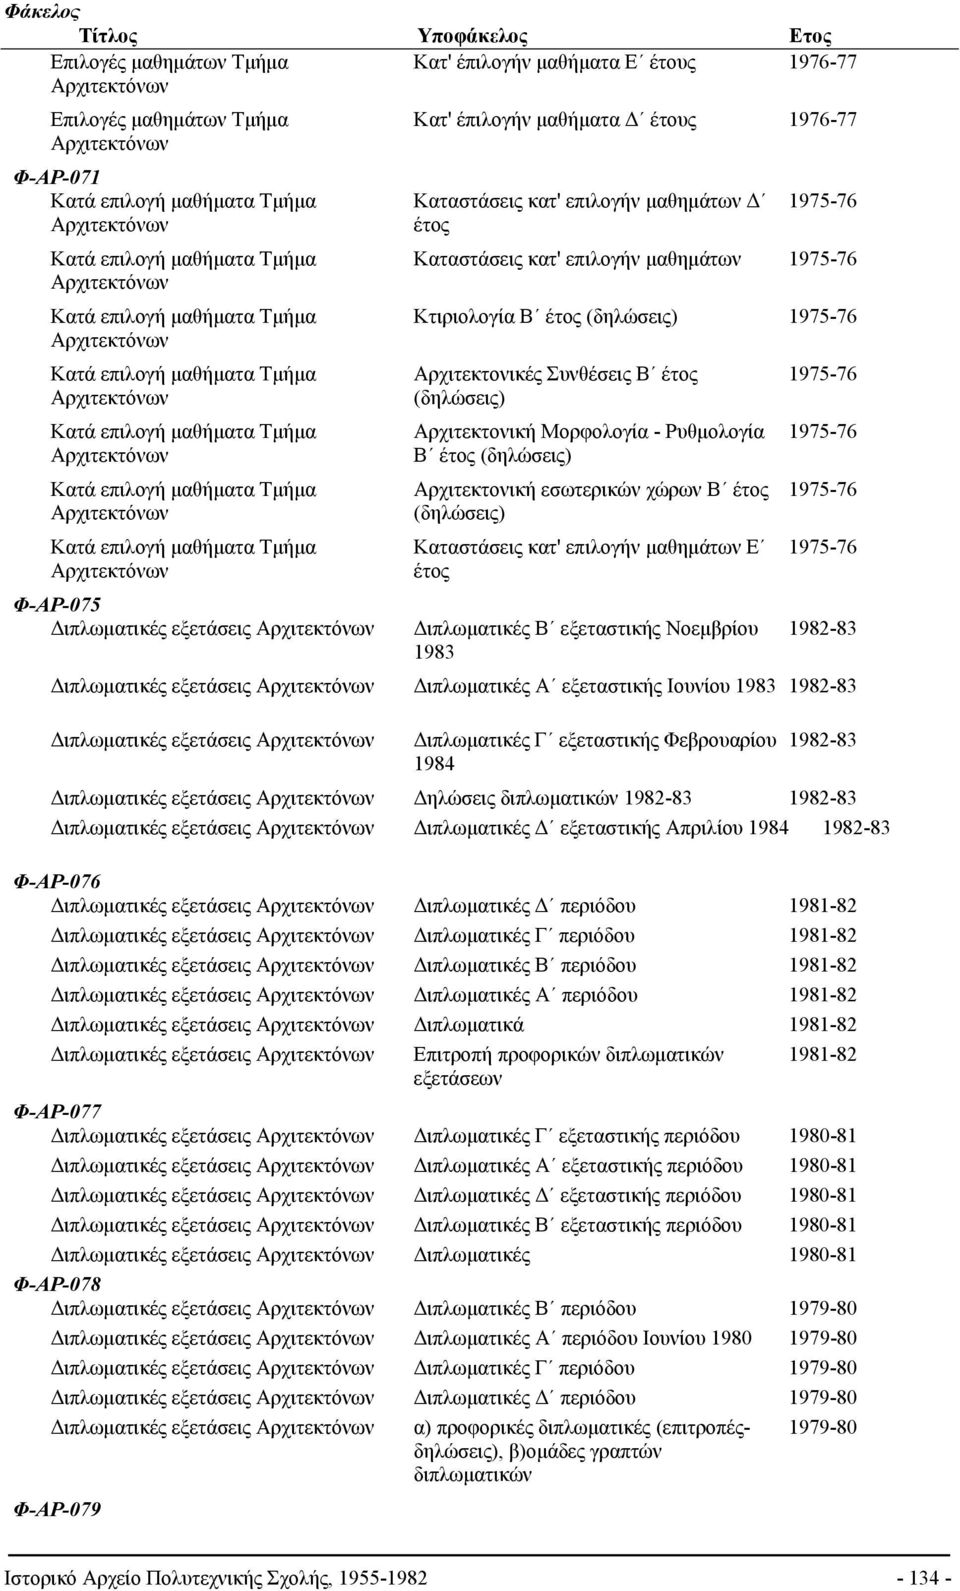 Αρχιτεκτονικές Συνθέσεις Β έτος 1975-76 (δηλώσεις) Κατά επιλογή μαθήματα Τμήμα Αρχιτεκτονική Μορφολογία - Ρυθμολογία 1975-76 Β έτος (δηλώσεις) Κατά επιλογή μαθήματα Τμήμα Αρχιτεκτονική εσωτερικών